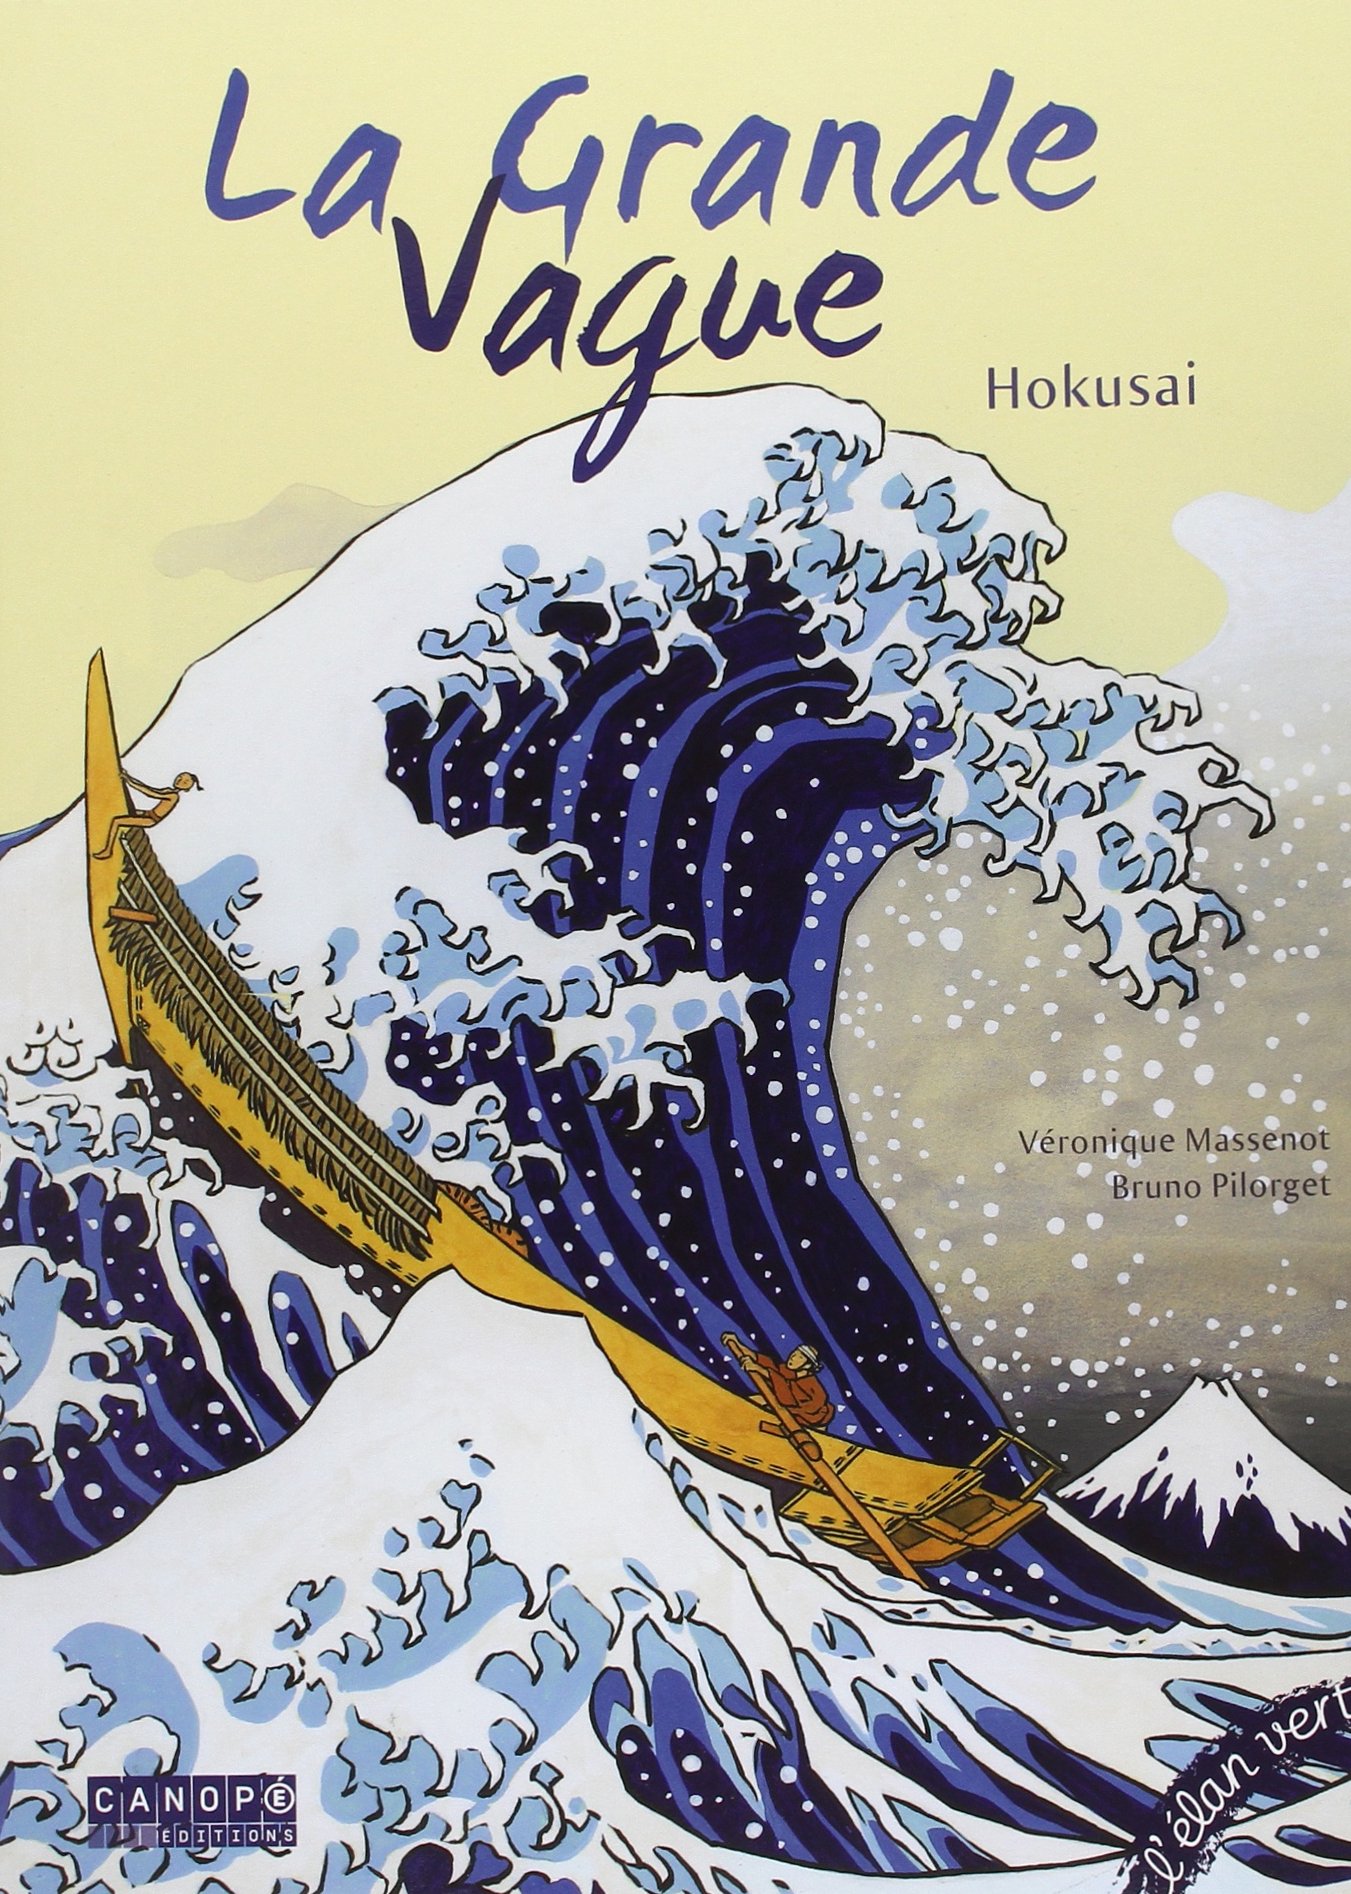 La Grande Vague Hokusai